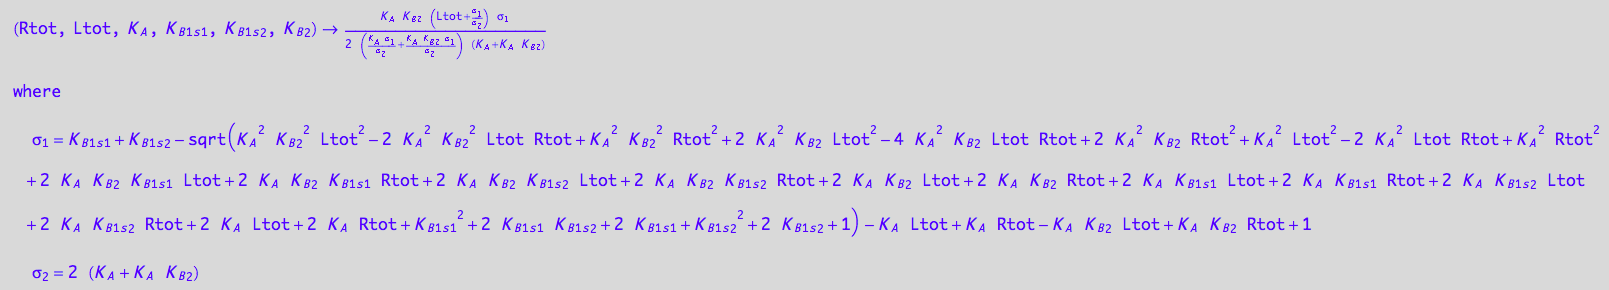 (Rtot, Ltot, K_A, K_B_1_s_1, K_B_1_s_2, K_B_2) -> (K_A*K_B_2*(Ltot + (K_B_1_s_1 + K_B_1_s_2 - (K_A^2*K_B_2^2*Ltot^2 - 2*K_A^2*K_B_2^2*Ltot*Rtot + K_A^2*K_B_2^2*Rtot^2 + 2*K_A^2*K_B_2*Ltot^2 - 4*K_A^2*K_B_2*Ltot*Rtot + 2*K_A^2*K_B_2*Rtot^2 + K_A^2*Ltot^2 - 2*K_A^2*Ltot*Rtot + K_A^2*Rtot^2 + 2*K_A*K_B_2*K_B_1_s_1*Ltot + 2*K_A*K_B_2*K_B_1_s_1*Rtot + 2*K_A*K_B_2*K_B_1_s_2*Ltot + 2*K_A*K_B_2*K_B_1_s_2*Rtot + 2*K_A*K_B_2*Ltot + 2*K_A*K_B_2*Rtot + 2*K_A*K_B_1_s_1*Ltot + 2*K_A*K_B_1_s_1*Rtot + 2*K_A*K_B_1_s_2*Ltot + 2*K_A*K_B_1_s_2*Rtot + 2*K_A*Ltot + 2*K_A*Rtot + K_B_1_s_1^2 + 2*K_B_1_s_1*K_B_1_s_2 + 2*K_B_1_s_1 + K_B_1_s_2^2 + 2*K_B_1_s_2 + 1)^(1/2) - K_A*Ltot + K_A*Rtot - K_A*K_B_2*Ltot + K_A*K_B_2*Rtot + 1)/(2*(K_A + K_A*K_B_2)))*(K_B_1_s_1 + K_B_1_s_2 - (K_A^2*K_B_2^2*Ltot^2 - 2*K_A^2*K_B_2^2*Ltot*Rtot + K_A^2*K_B_2^2*Rtot^2 + 2*K_A^2*K_B_2*Ltot^2 - 4*K_A^2*K_B_2*Ltot*Rtot + 2*K_A^2*K_B_2*Rtot^2 + K_A^2*Ltot^2 - 2*K_A^2*Ltot*Rtot + K_A^2*Rtot^2 + 2*K_A*K_B_2*K_B_1_s_1*Ltot + 2*K_A*K_B_2*K_B_1_s_1*Rtot + 2*K_A*K_B_2*K_B_1_s_2*Ltot + 2*K_A*K_B_2*K_B_1_s_2*Rtot + 2*K_A*K_B_2*Ltot + 2*K_A*K_B_2*Rtot + 2*K_A*K_B_1_s_1*Ltot + 2*K_A*K_B_1_s_1*Rtot + 2*K_A*K_B_1_s_2*Ltot + 2*K_A*K_B_1_s_2*Rtot + 2*K_A*Ltot + 2*K_A*Rtot + K_B_1_s_1^2 + 2*K_B_1_s_1*K_B_1_s_2 + 2*K_B_1_s_1 + K_B_1_s_2^2 + 2*K_B_1_s_2 + 1)^(1/2) - K_A*Ltot + K_A*Rtot - K_A*K_B_2*Ltot + K_A*K_B_2*Rtot + 1))/(2*((K_A*(K_B_1_s_1 + K_B_1_s_2 - (K_A^2*K_B_2^2*Ltot^2 - 2*K_A^2*K_B_2^2*Ltot*Rtot + K_A^2*K_B_2^2*Rtot^2 + 2*K_A^2*K_B_2*Ltot^2 - 4*K_A^2*K_B_2*Ltot*Rtot + 2*K_A^2*K_B_2*Rtot^2 + K_A^2*Ltot^2 - 2*K_A^2*Ltot*Rtot + K_A^2*Rtot^2 + 2*K_A*K_B_2*K_B_1_s_1*Ltot + 2*K_A*K_B_2*K_B_1_s_1*Rtot + 2*K_A*K_B_2*K_B_1_s_2*Ltot + 2*K_A*K_B_2*K_B_1_s_2*Rtot + 2*K_A*K_B_2*Ltot + 2*K_A*K_B_2*Rtot + 2*K_A*K_B_1_s_1*Ltot + 2*K_A*K_B_1_s_1*Rtot + 2*K_A*K_B_1_s_2*Ltot + 2*K_A*K_B_1_s_2*Rtot + 2*K_A*Ltot + 2*K_A*Rtot + K_B_1_s_1^2 + 2*K_B_1_s_1*K_B_1_s_2 + 2*K_B_1_s_1 + K_B_1_s_2^2 + 2*K_B_1_s_2 + 1)^(1/2) - K_A*Ltot + K_A*Rtot - K_A*K_B_2*Ltot + K_A*K_B_2*Rtot + 1))/(2*(K_A + K_A*K_B_2)) + (K_A*K_B_2*(K_B_1_s_1 + K_B_1_s_2 - (K_A^2*K_B_2^2*Ltot^2 - 2*K_A^2*K_B_2^2*Ltot*Rtot + K_A^2*K_B_2^2*Rtot^2 + 2*K_A^2*K_B_2*Ltot^2 - 4*K_A^2*K_B_2*Ltot*Rtot + 2*K_A^2*K_B_2*Rtot^2 + K_A^2*Ltot^2 - 2*K_A^2*Ltot*Rtot + K_A^2*Rtot^2 + 2*K_A*K_B_2*K_B_1_s_1*Ltot + 2*K_A*K_B_2*K_B_1_s_1*Rtot + 2*K_A*K_B_2*K_B_1_s_2*Ltot + 2*K_A*K_B_2*K_B_1_s_2*Rtot + 2*K_A*K_B_2*Ltot + 2*K_A*K_B_2*Rtot + 2*K_A*K_B_1_s_1*Ltot + 2*K_A*K_B_1_s_1*Rtot + 2*K_A*K_B_1_s_2*Ltot + 2*K_A*K_B_1_s_2*Rtot + 2*K_A*Ltot + 2*K_A*Rtot + K_B_1_s_1^2 + 2*K_B_1_s_1*K_B_1_s_2 + 2*K_B_1_s_1 + K_B_1_s_2^2 + 2*K_B_1_s_2 + 1)^(1/2) - K_A*Ltot + K_A*Rtot - K_A*K_B_2*Ltot + K_A*K_B_2*Rtot + 1))/(2*(K_A + K_A*K_B_2)))*(K_A + K_A*K_B_2))